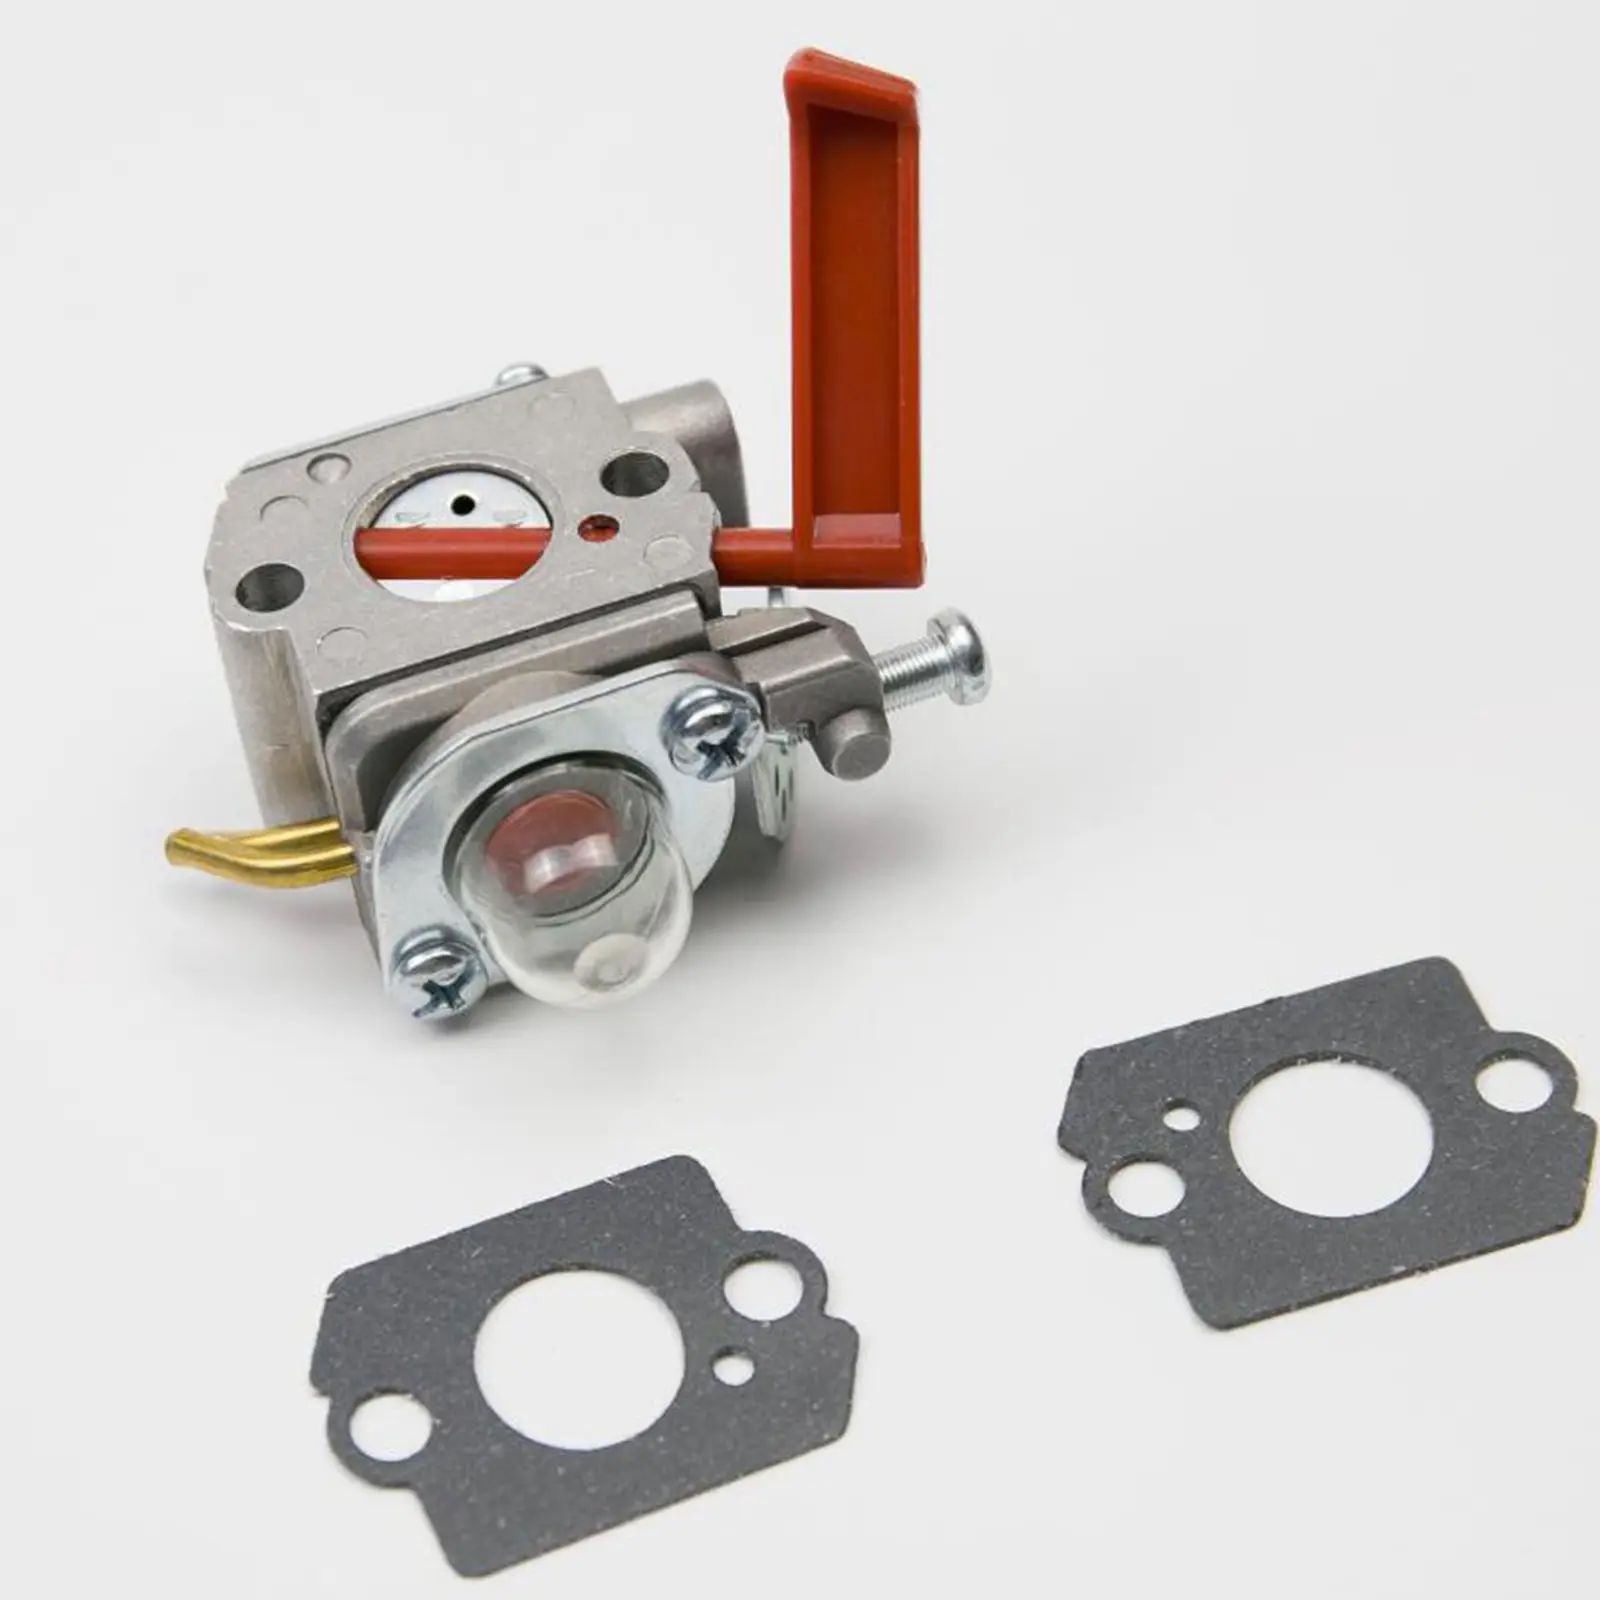 Replacement Carburetor for Homelite UT-20760 UT-20760-A UT-20769 UT-20769-A , Durable, for Garden Tool Kits